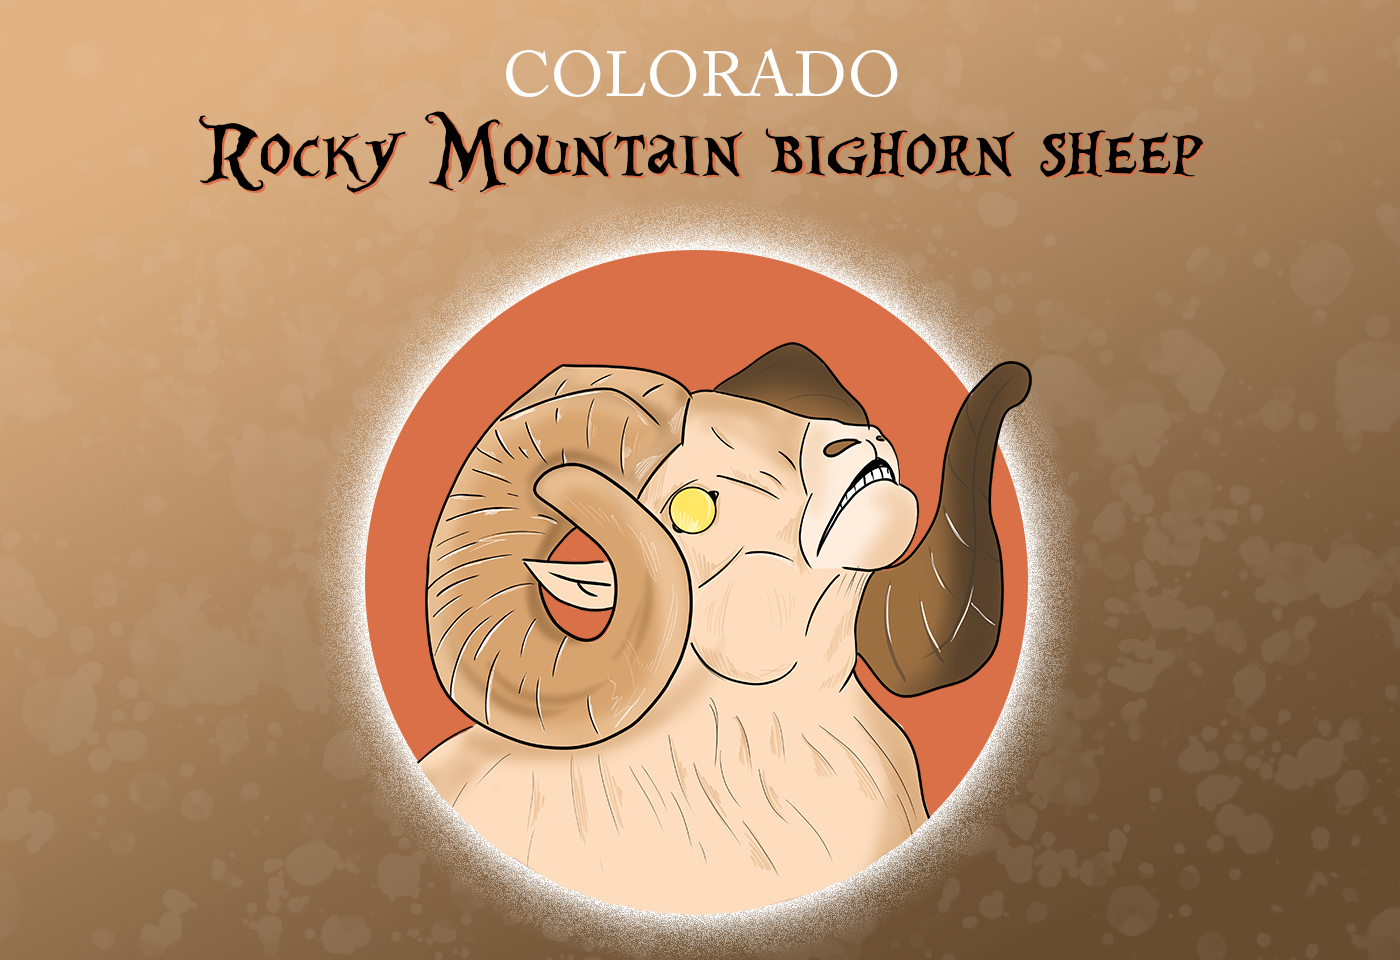 Colorado state mammal: rocky mountain bighorn sheep 